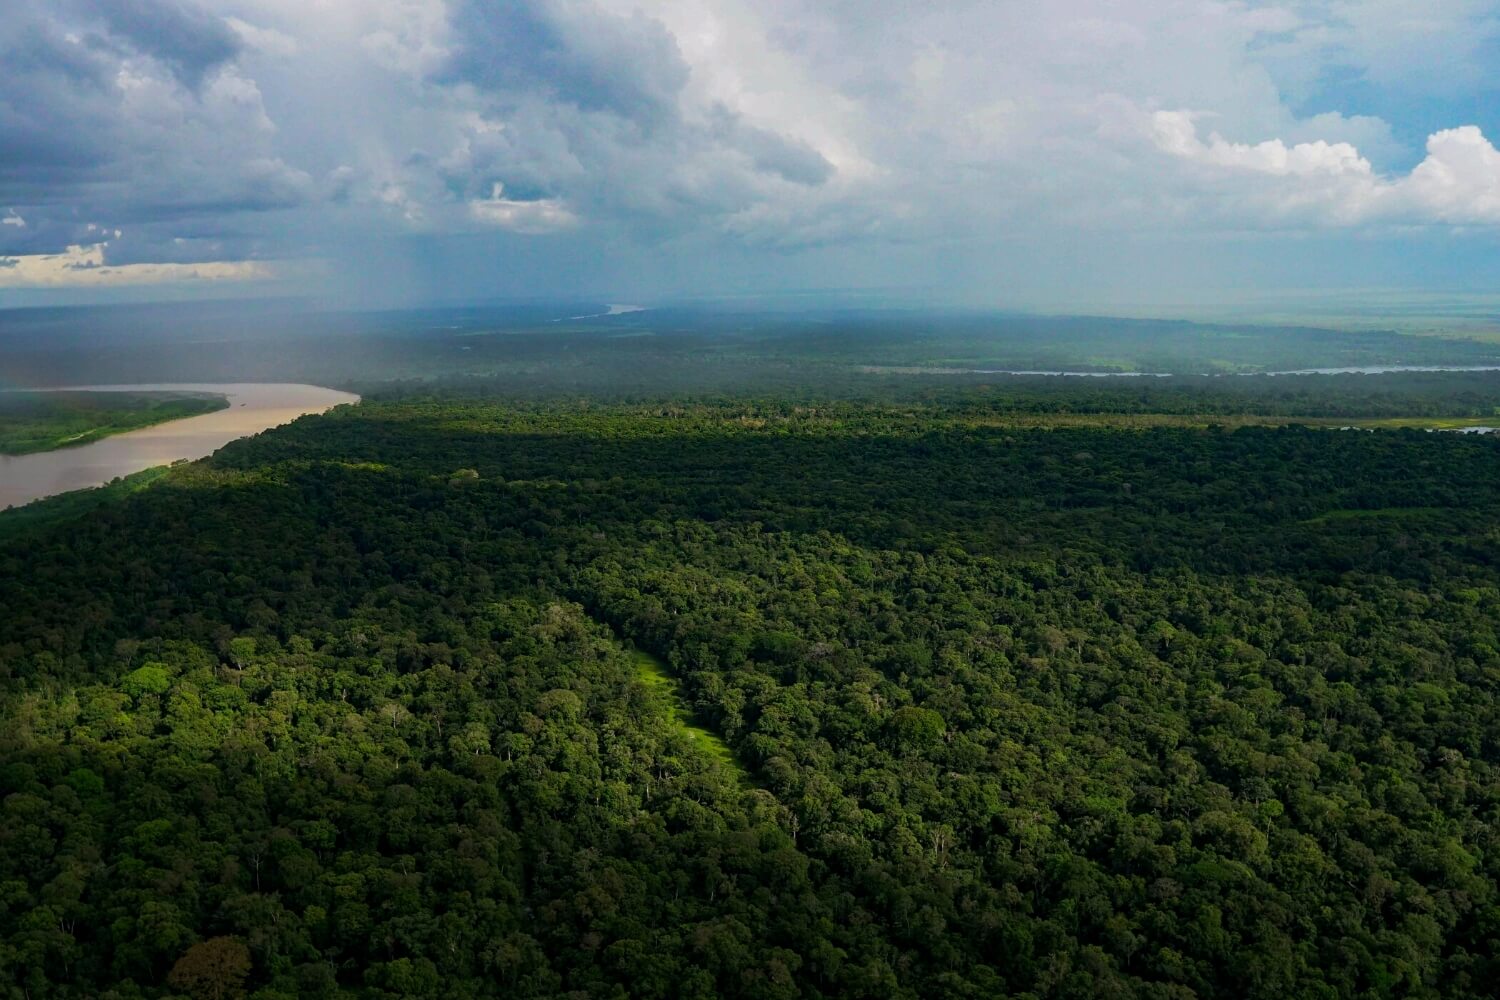 Iquitos Amazon Jungle Region